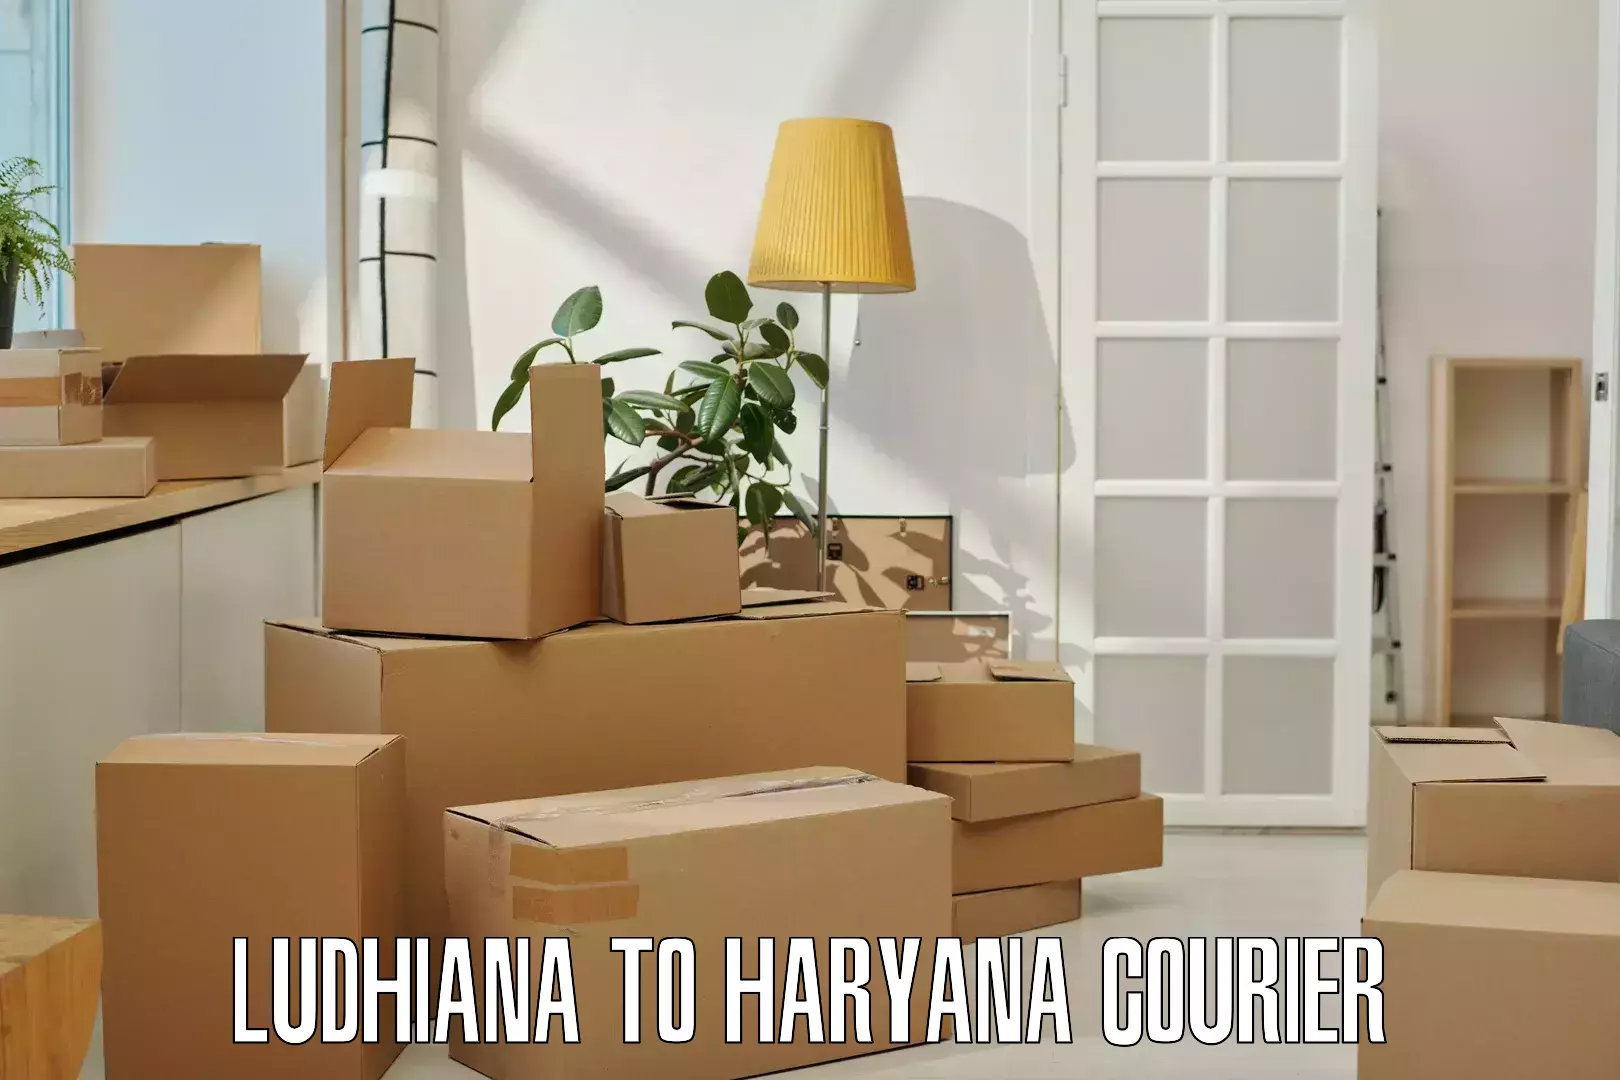 Express courier capabilities Ludhiana to Haryana